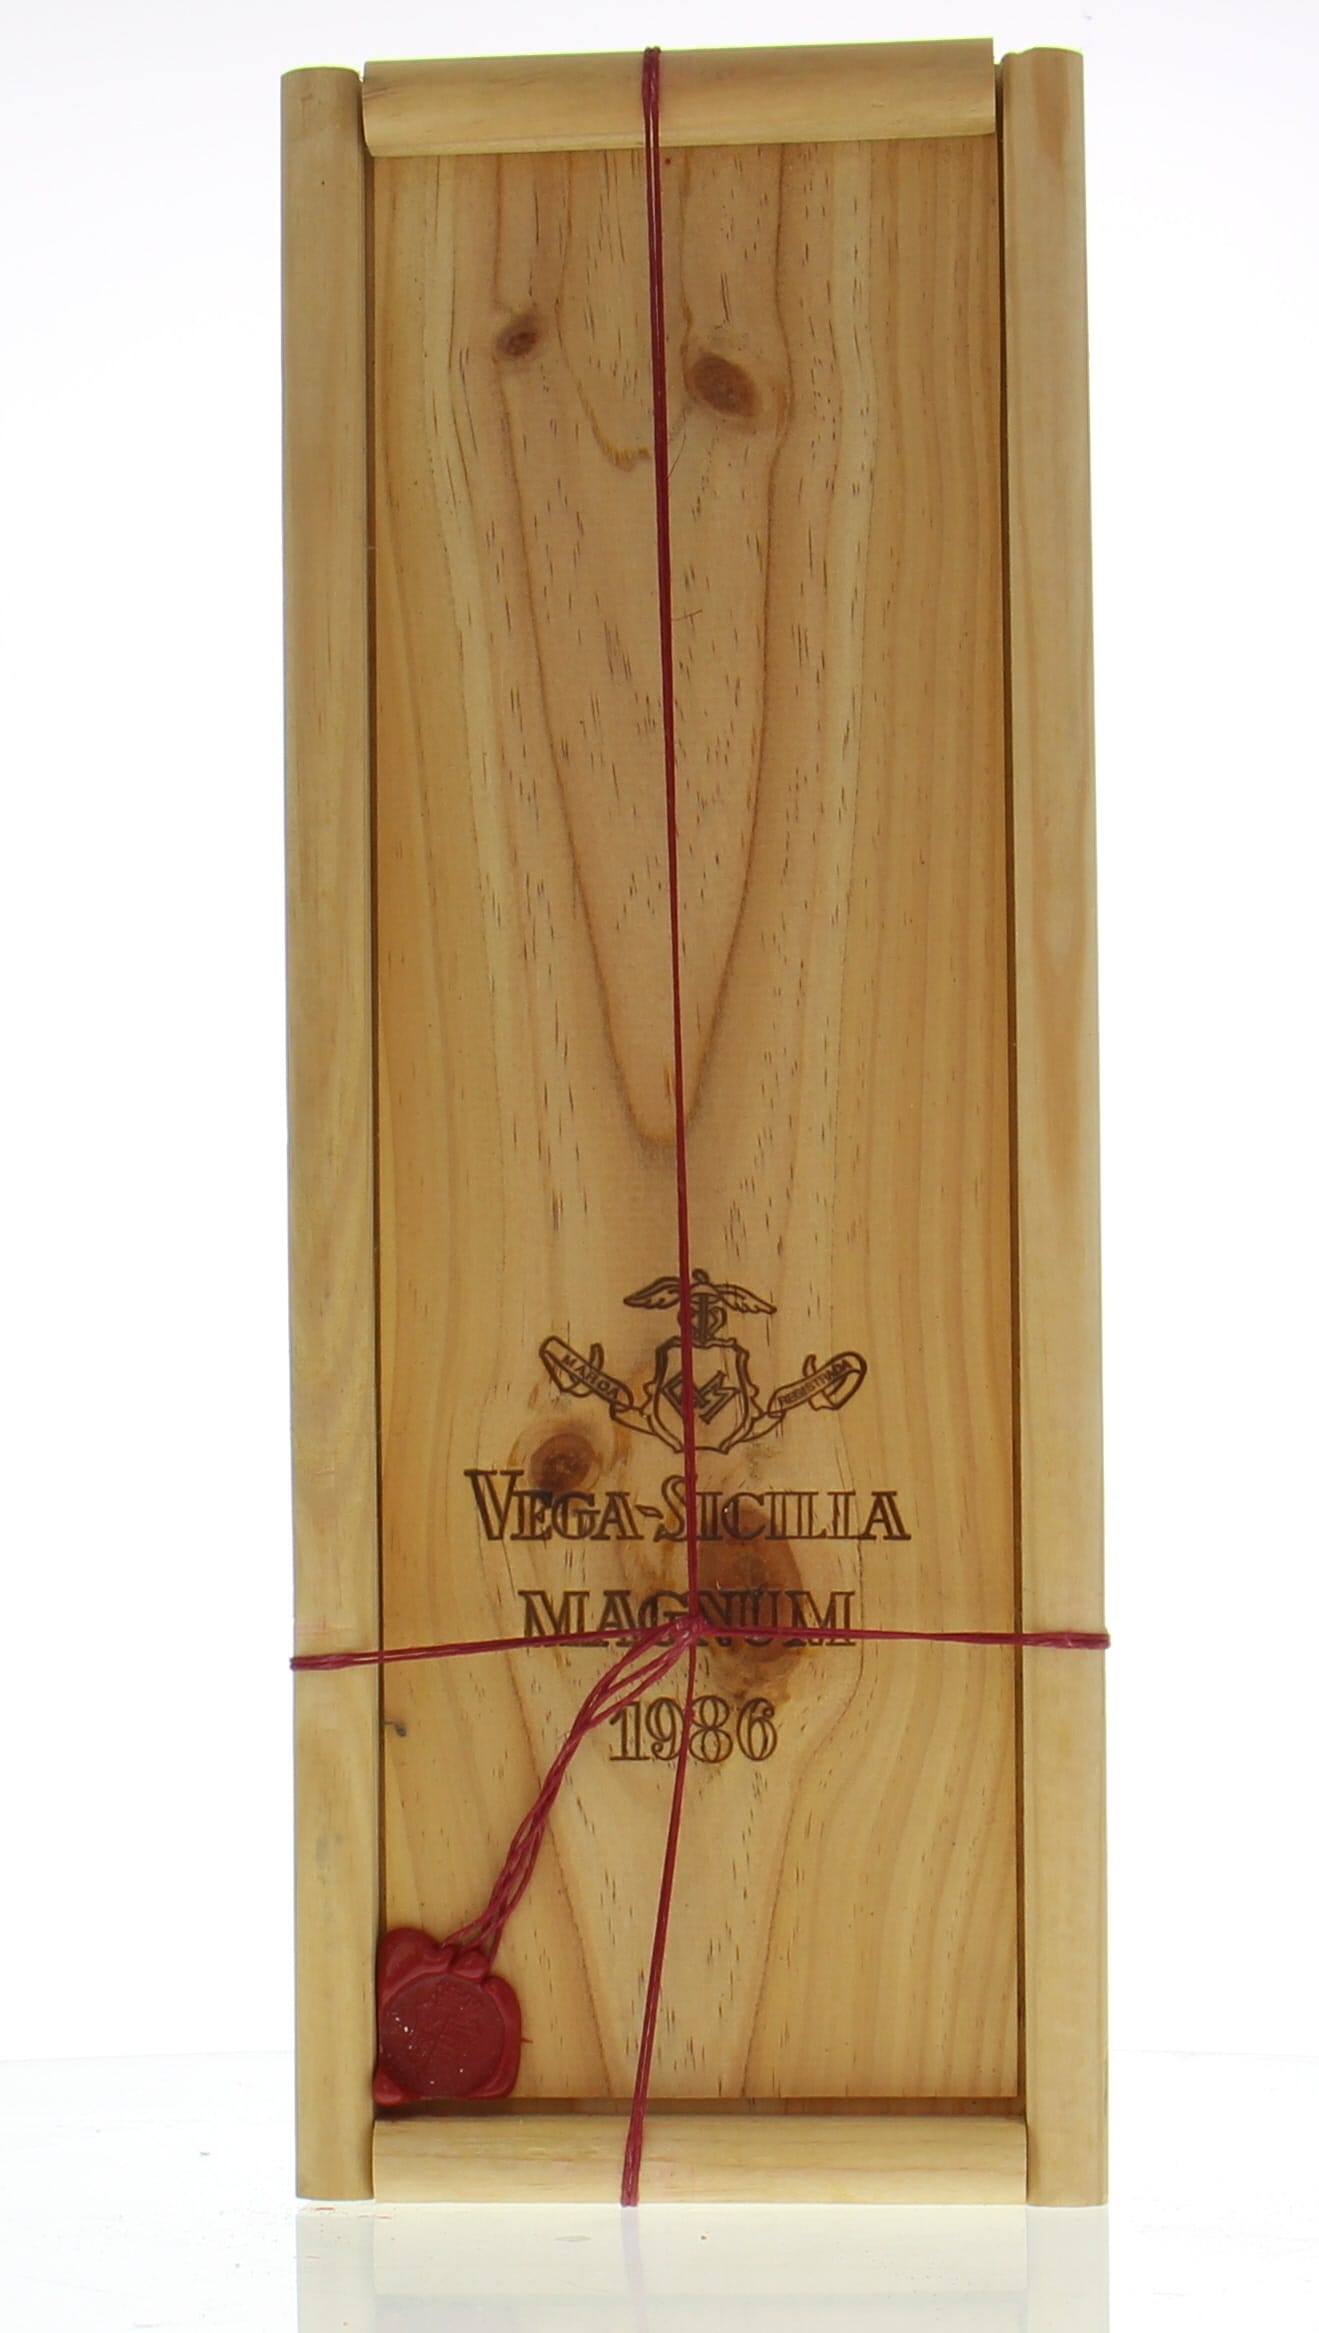 Vega Sicilia - Unico 1986 From Original Wooden Case